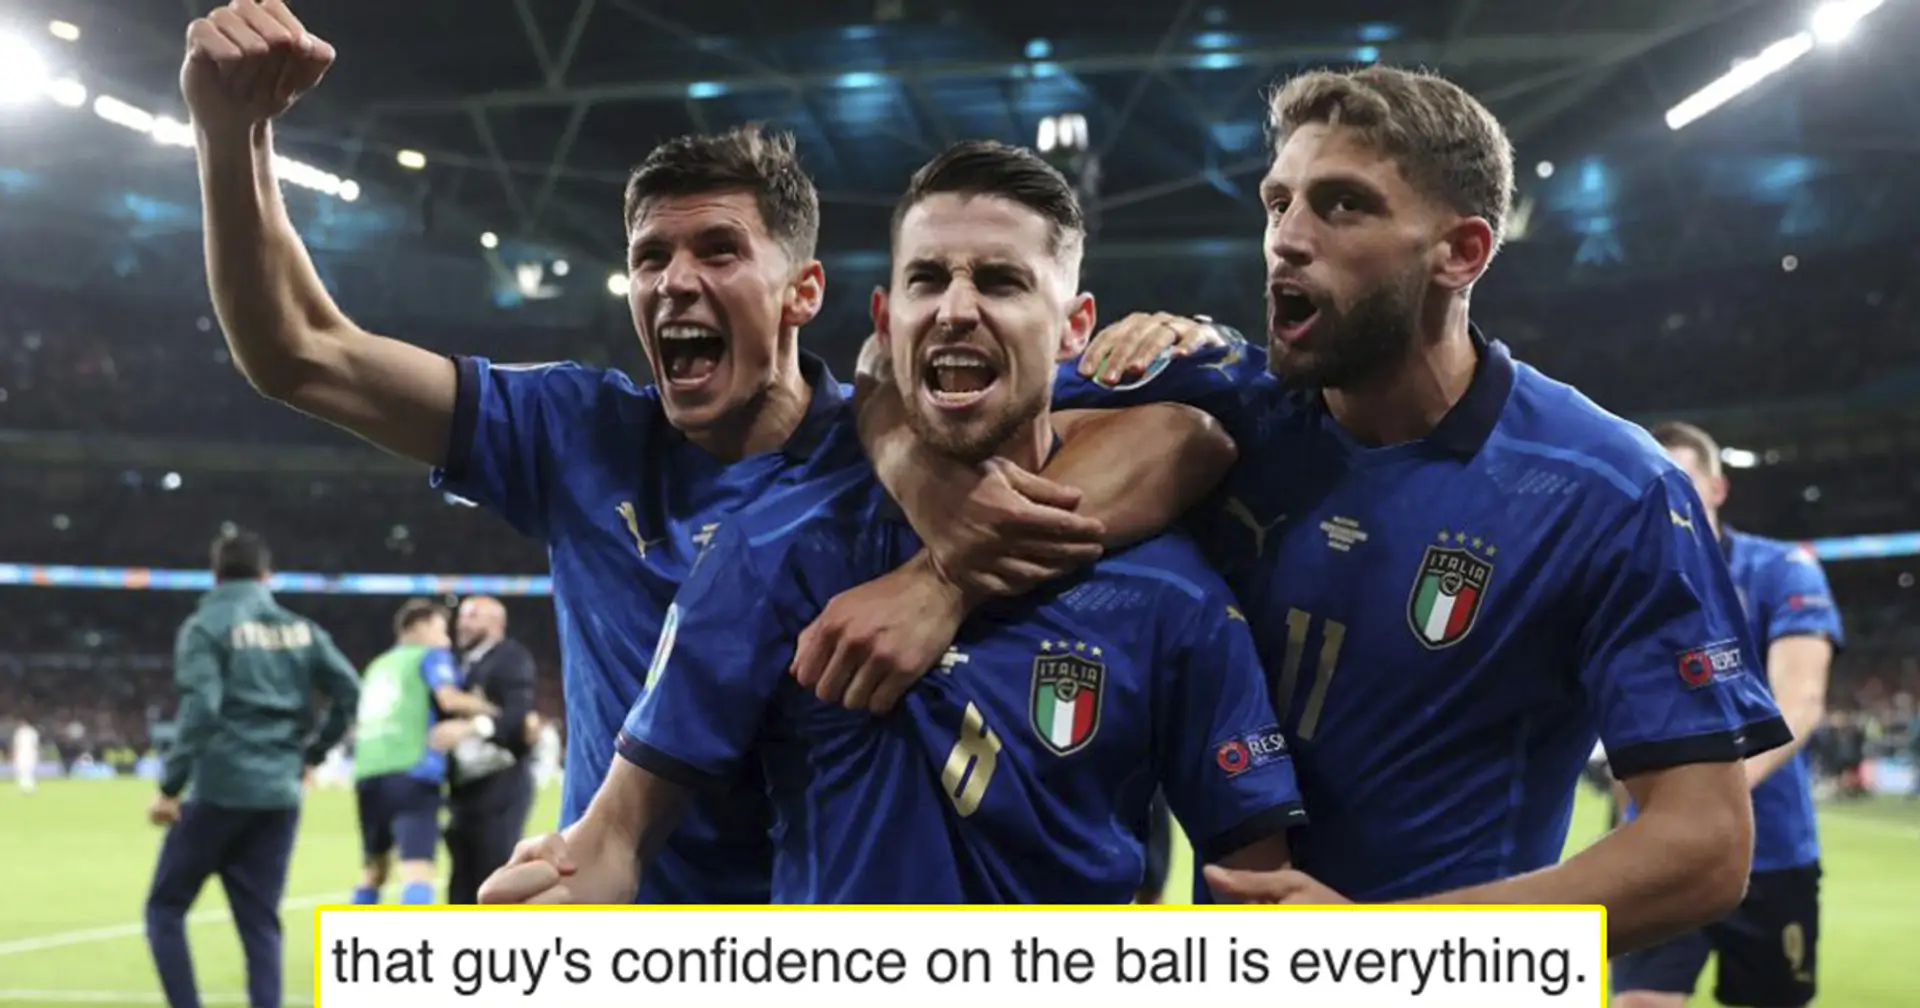 "Ce qu'il peut faire avec le ballon est incroyable": les fans nomment un joueur italien qu'ils aimeraient voir au Barça